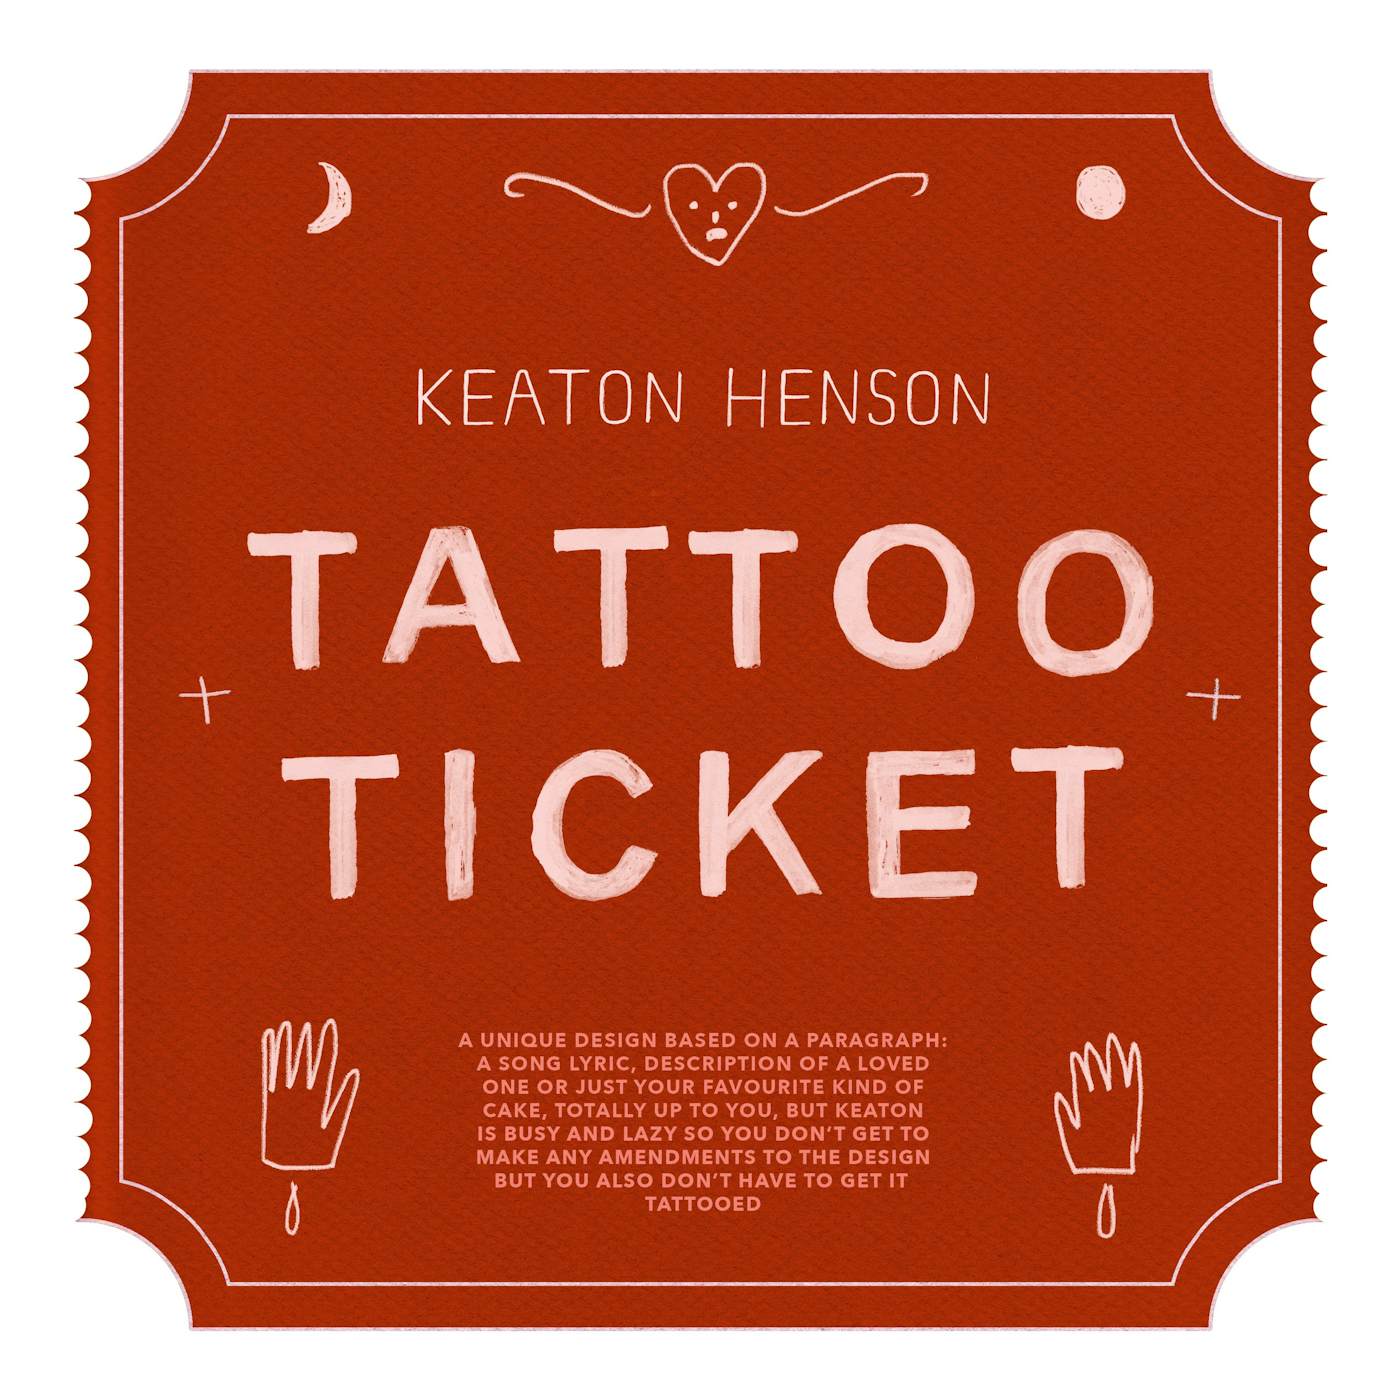 Keaton Henson Tattoo Ticket